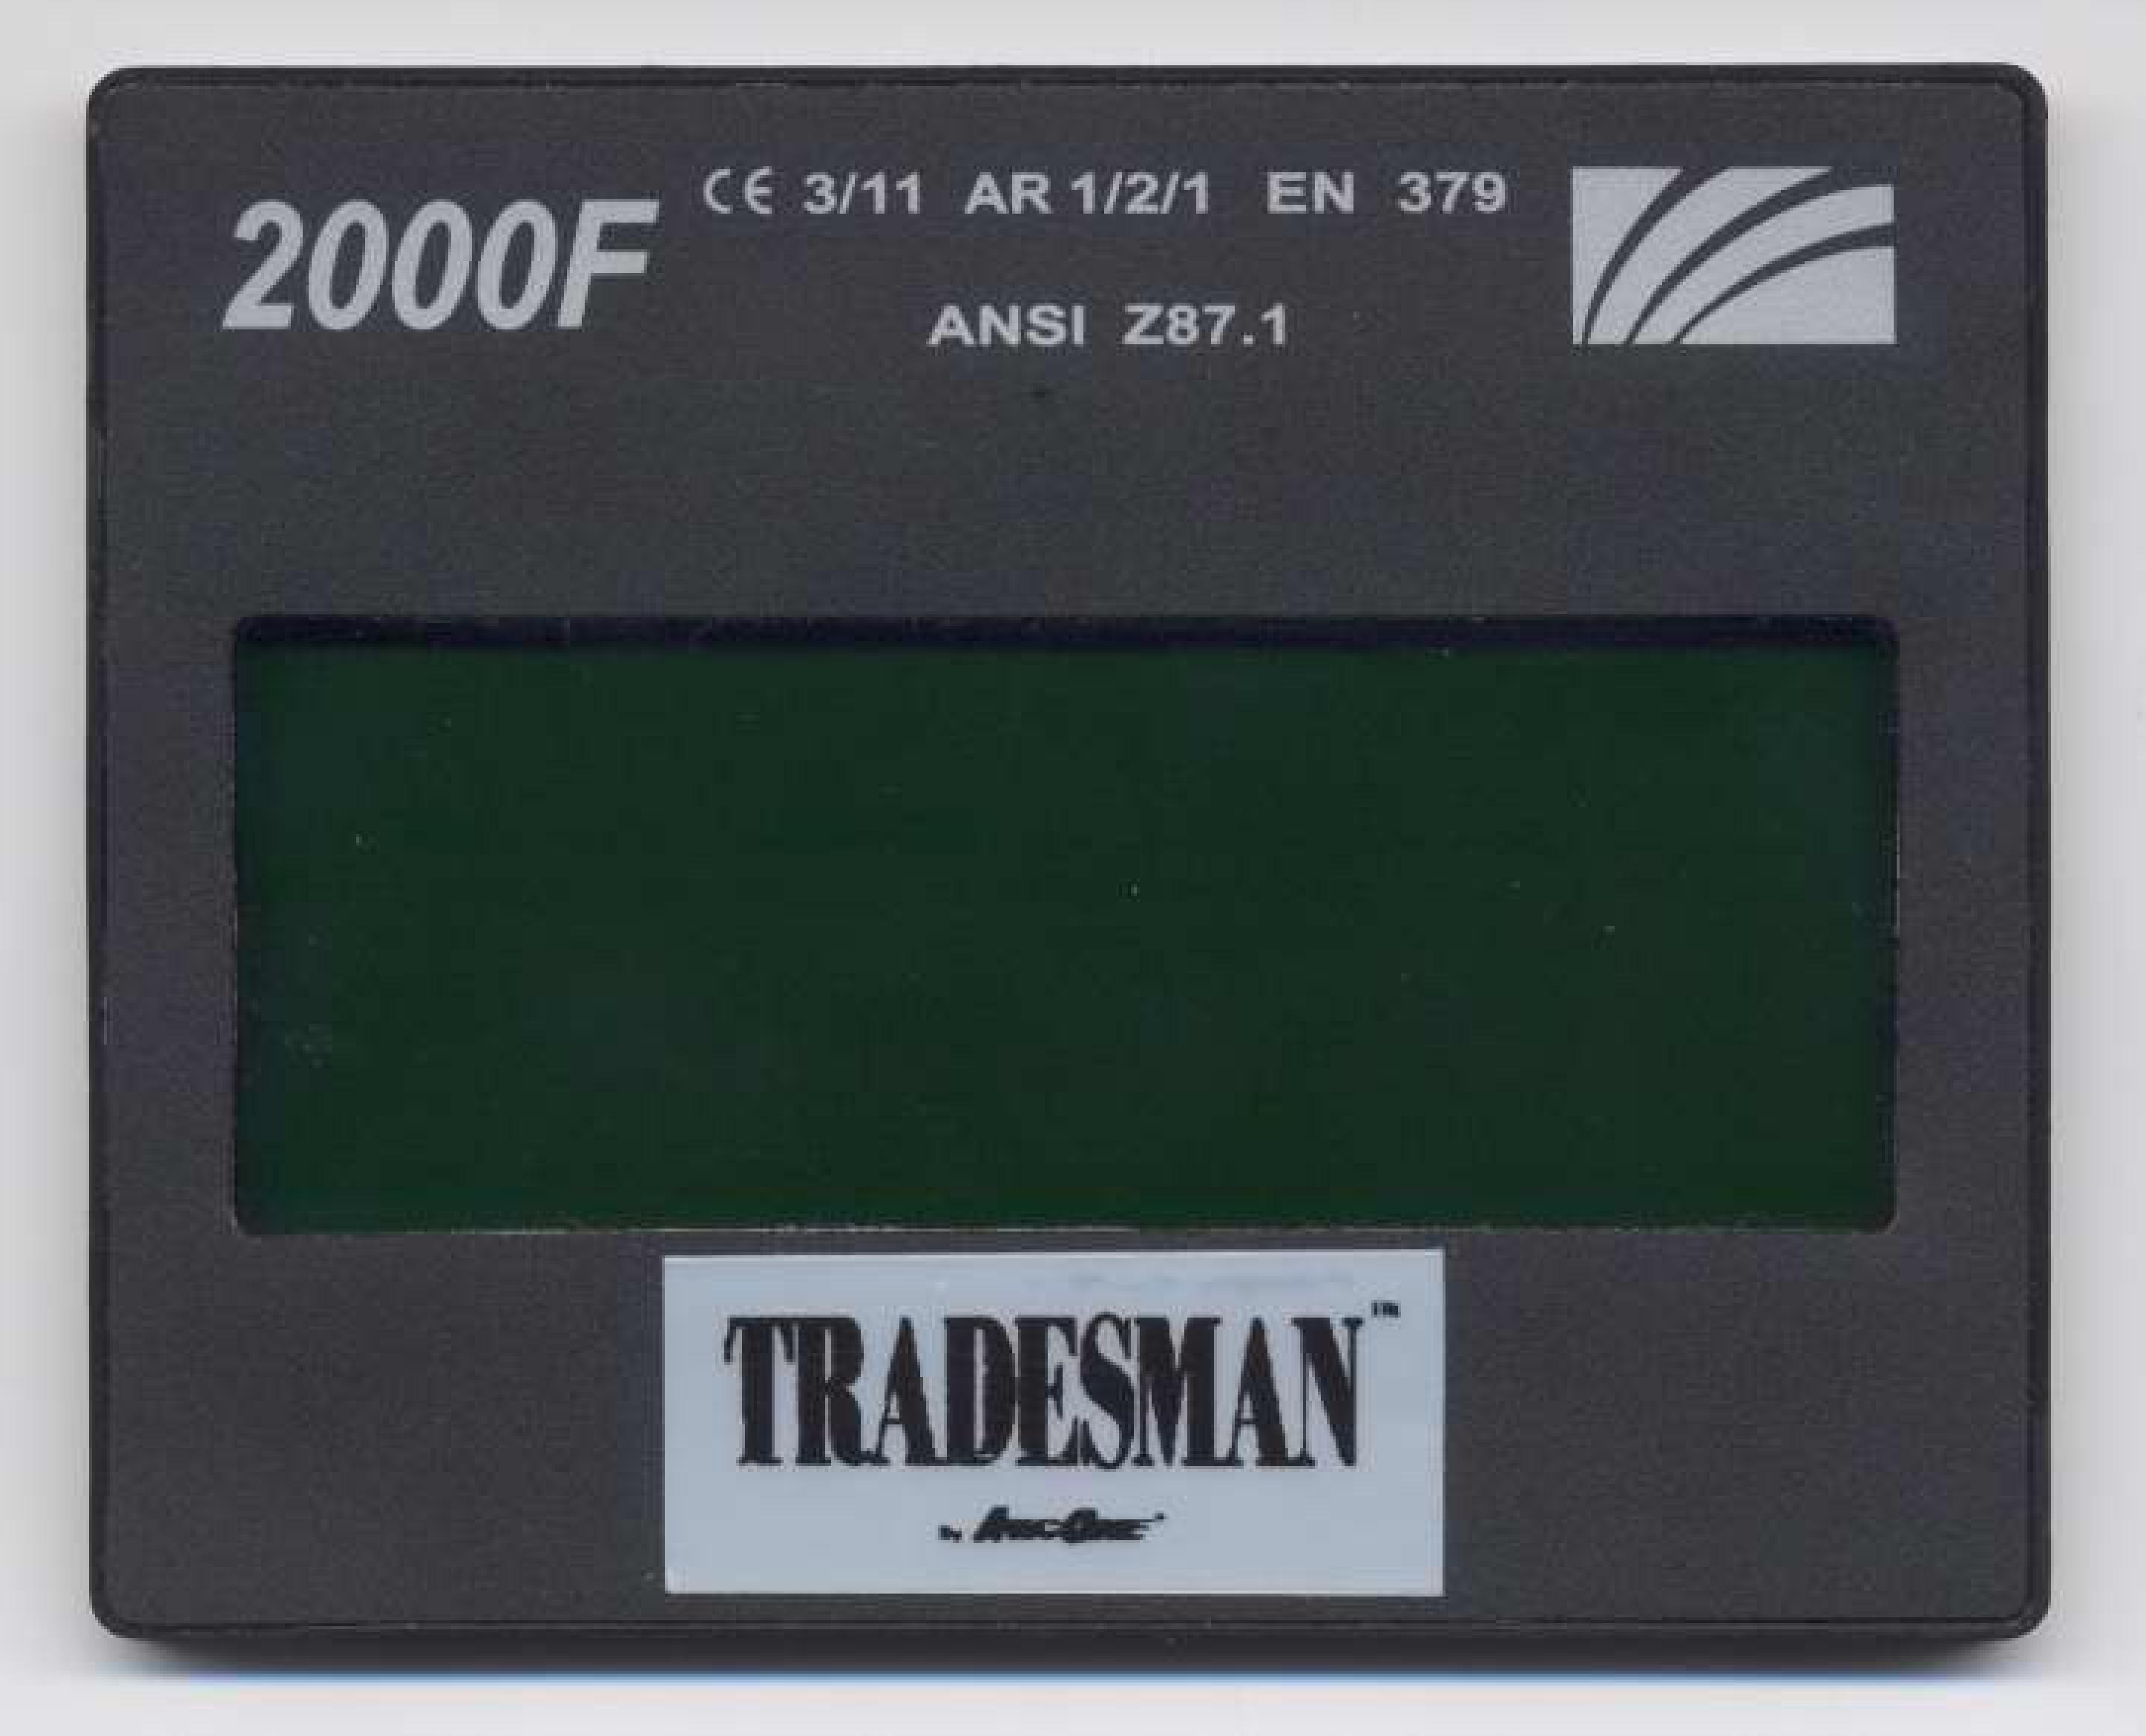 Trademark Logo TRADESMAN